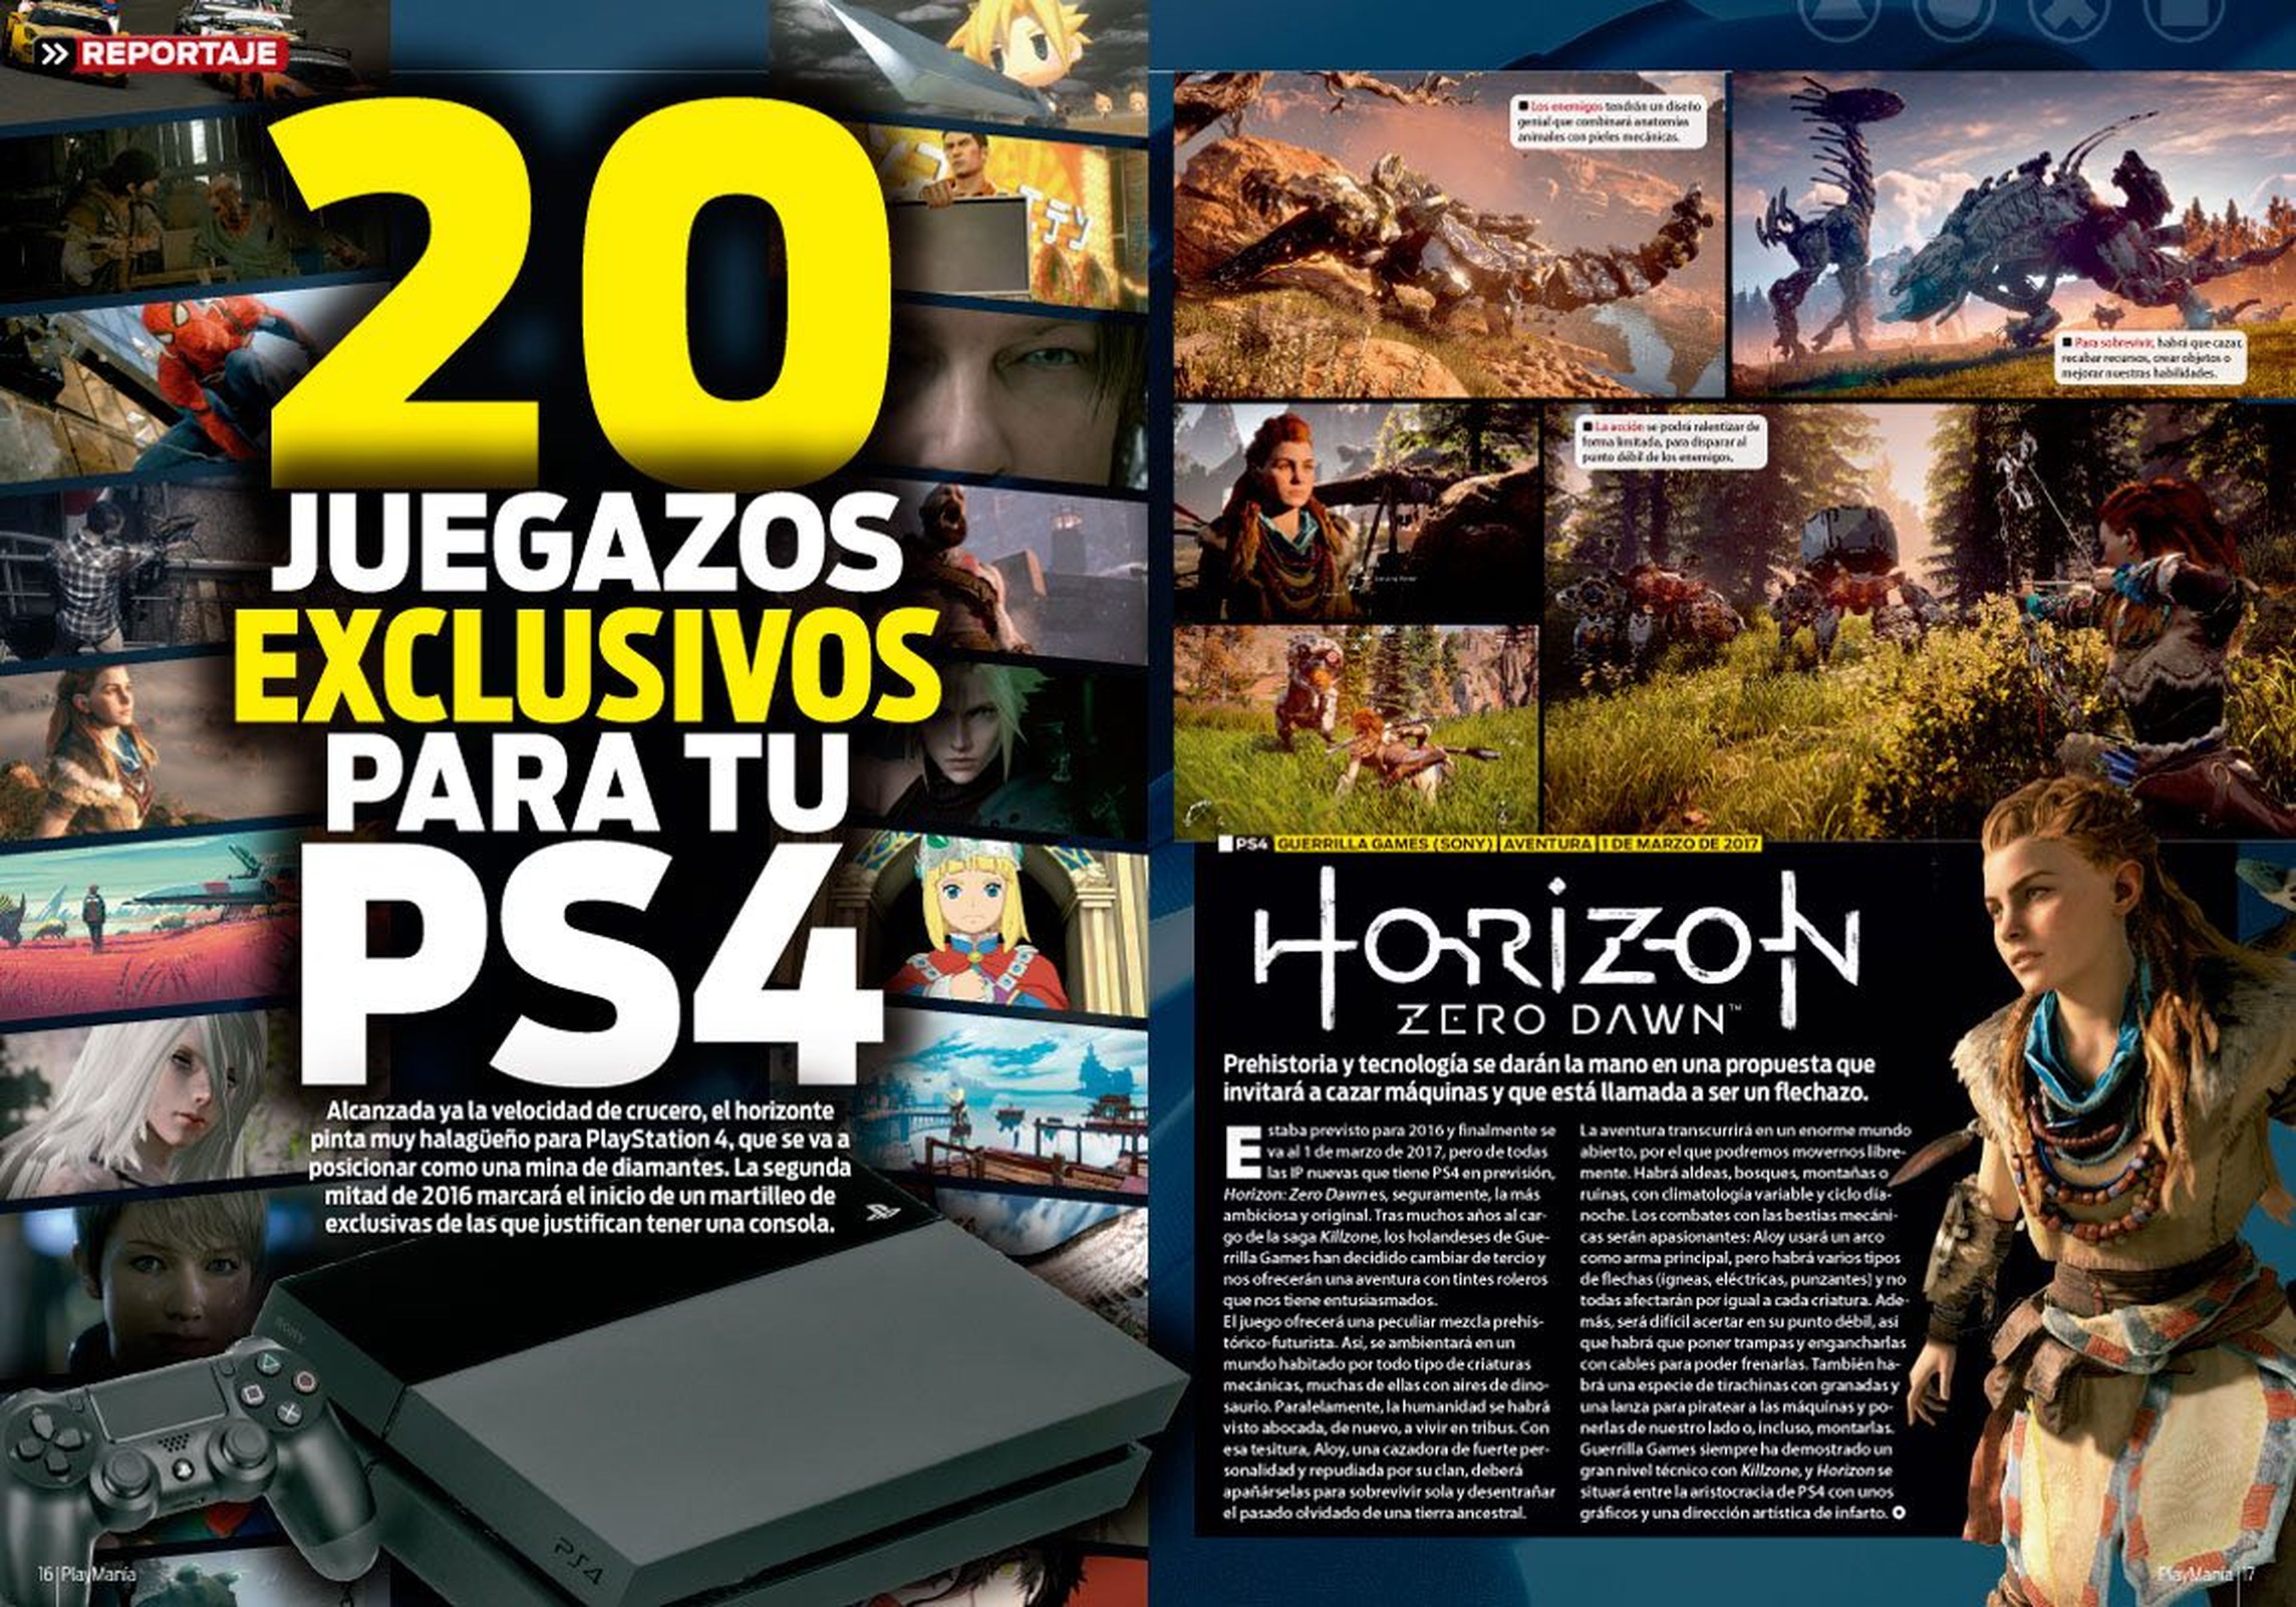 Reportaje exclusivos PS4 en Playmania 213